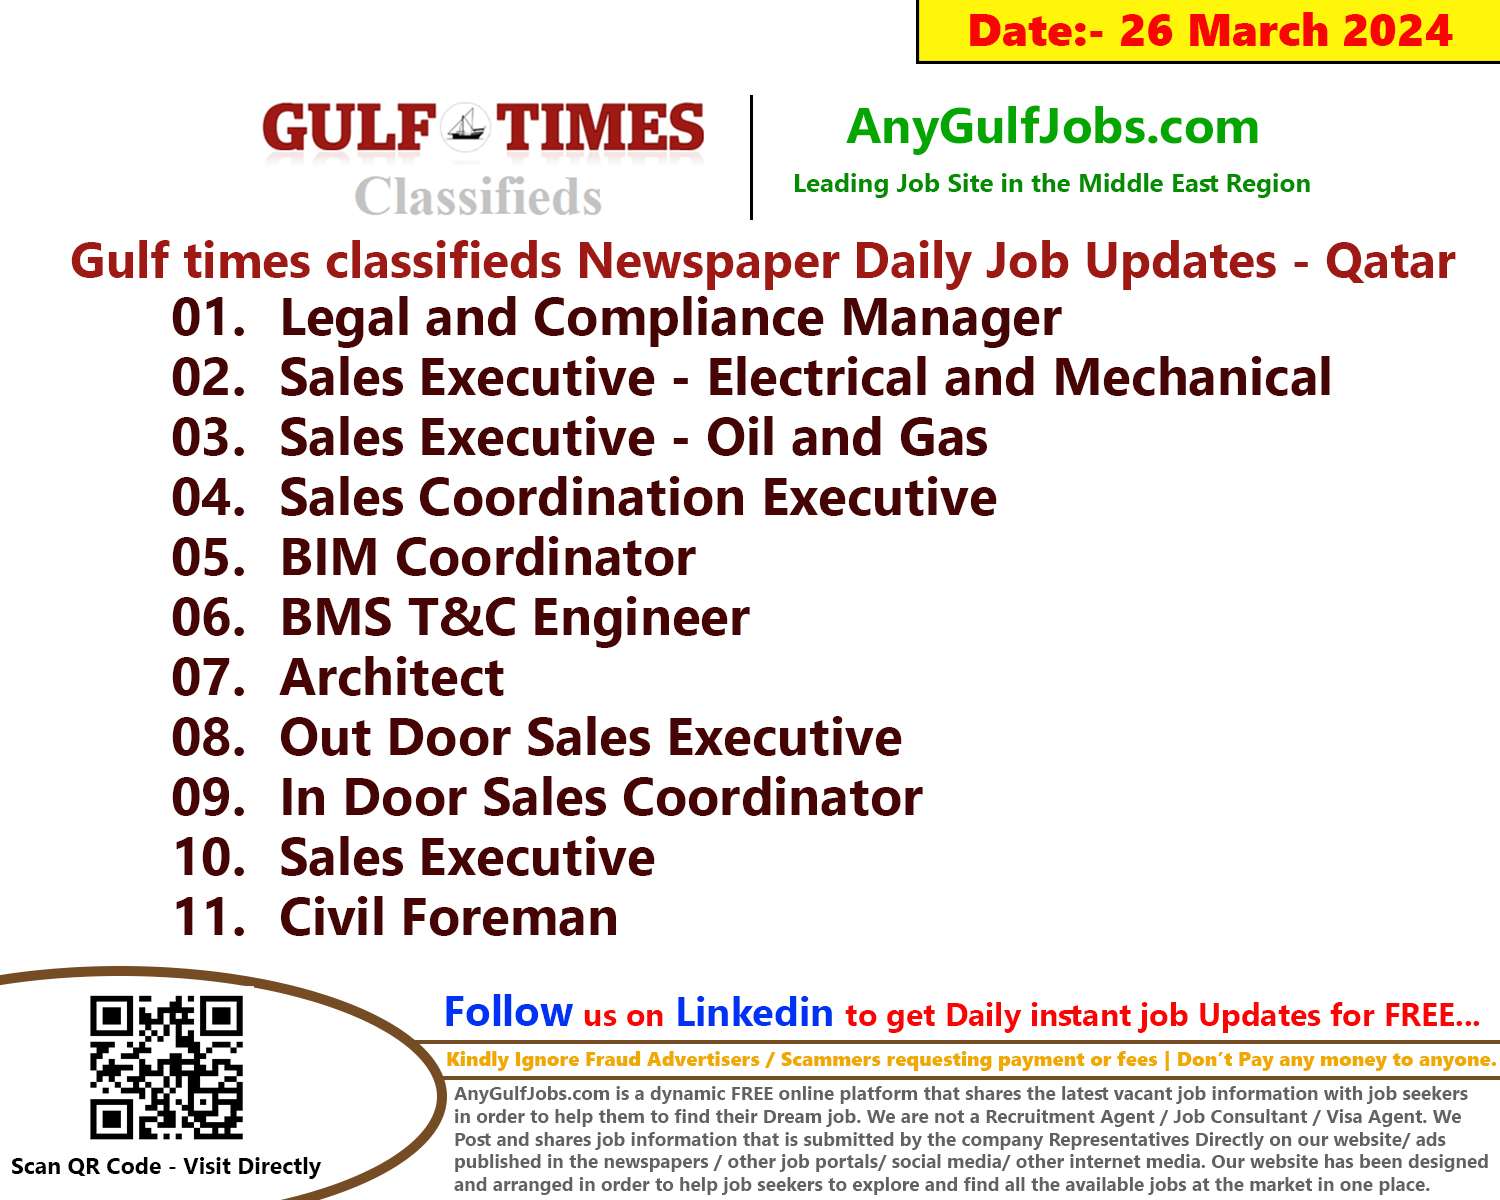 Gulf Times Classifieds Job Vacancies Qatar - 26 March 2024